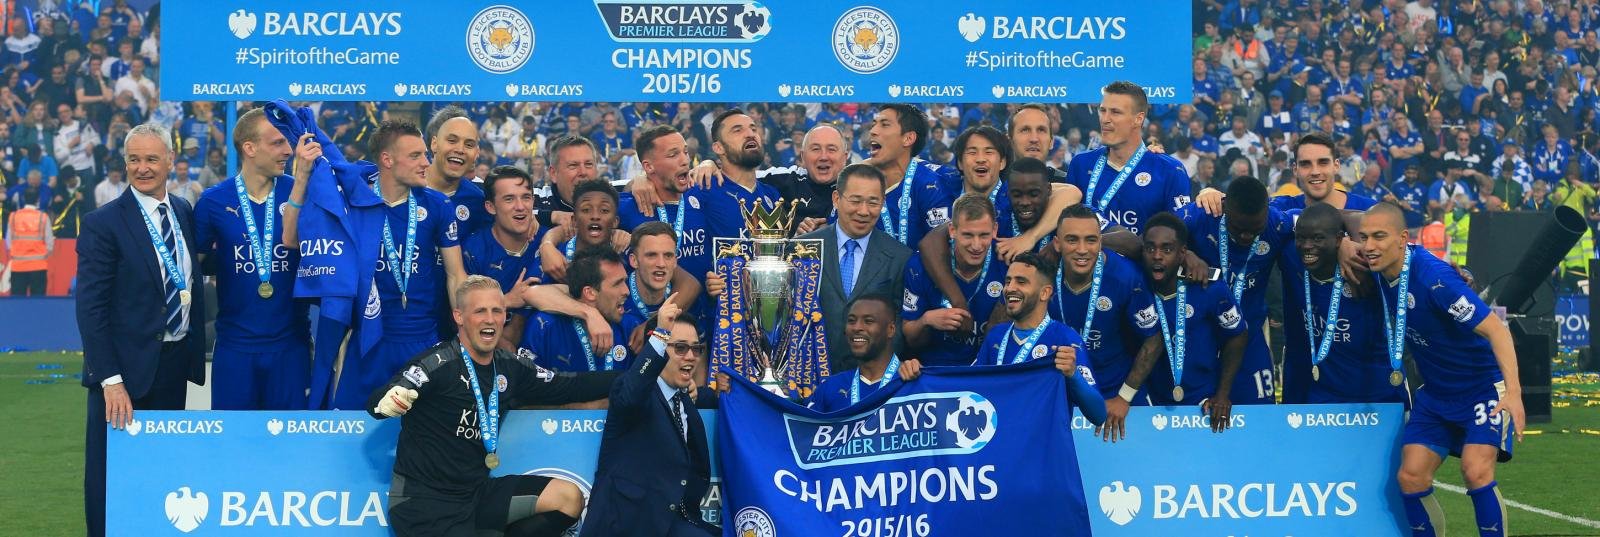 Top 5: 2016/17 Premier League title contenders